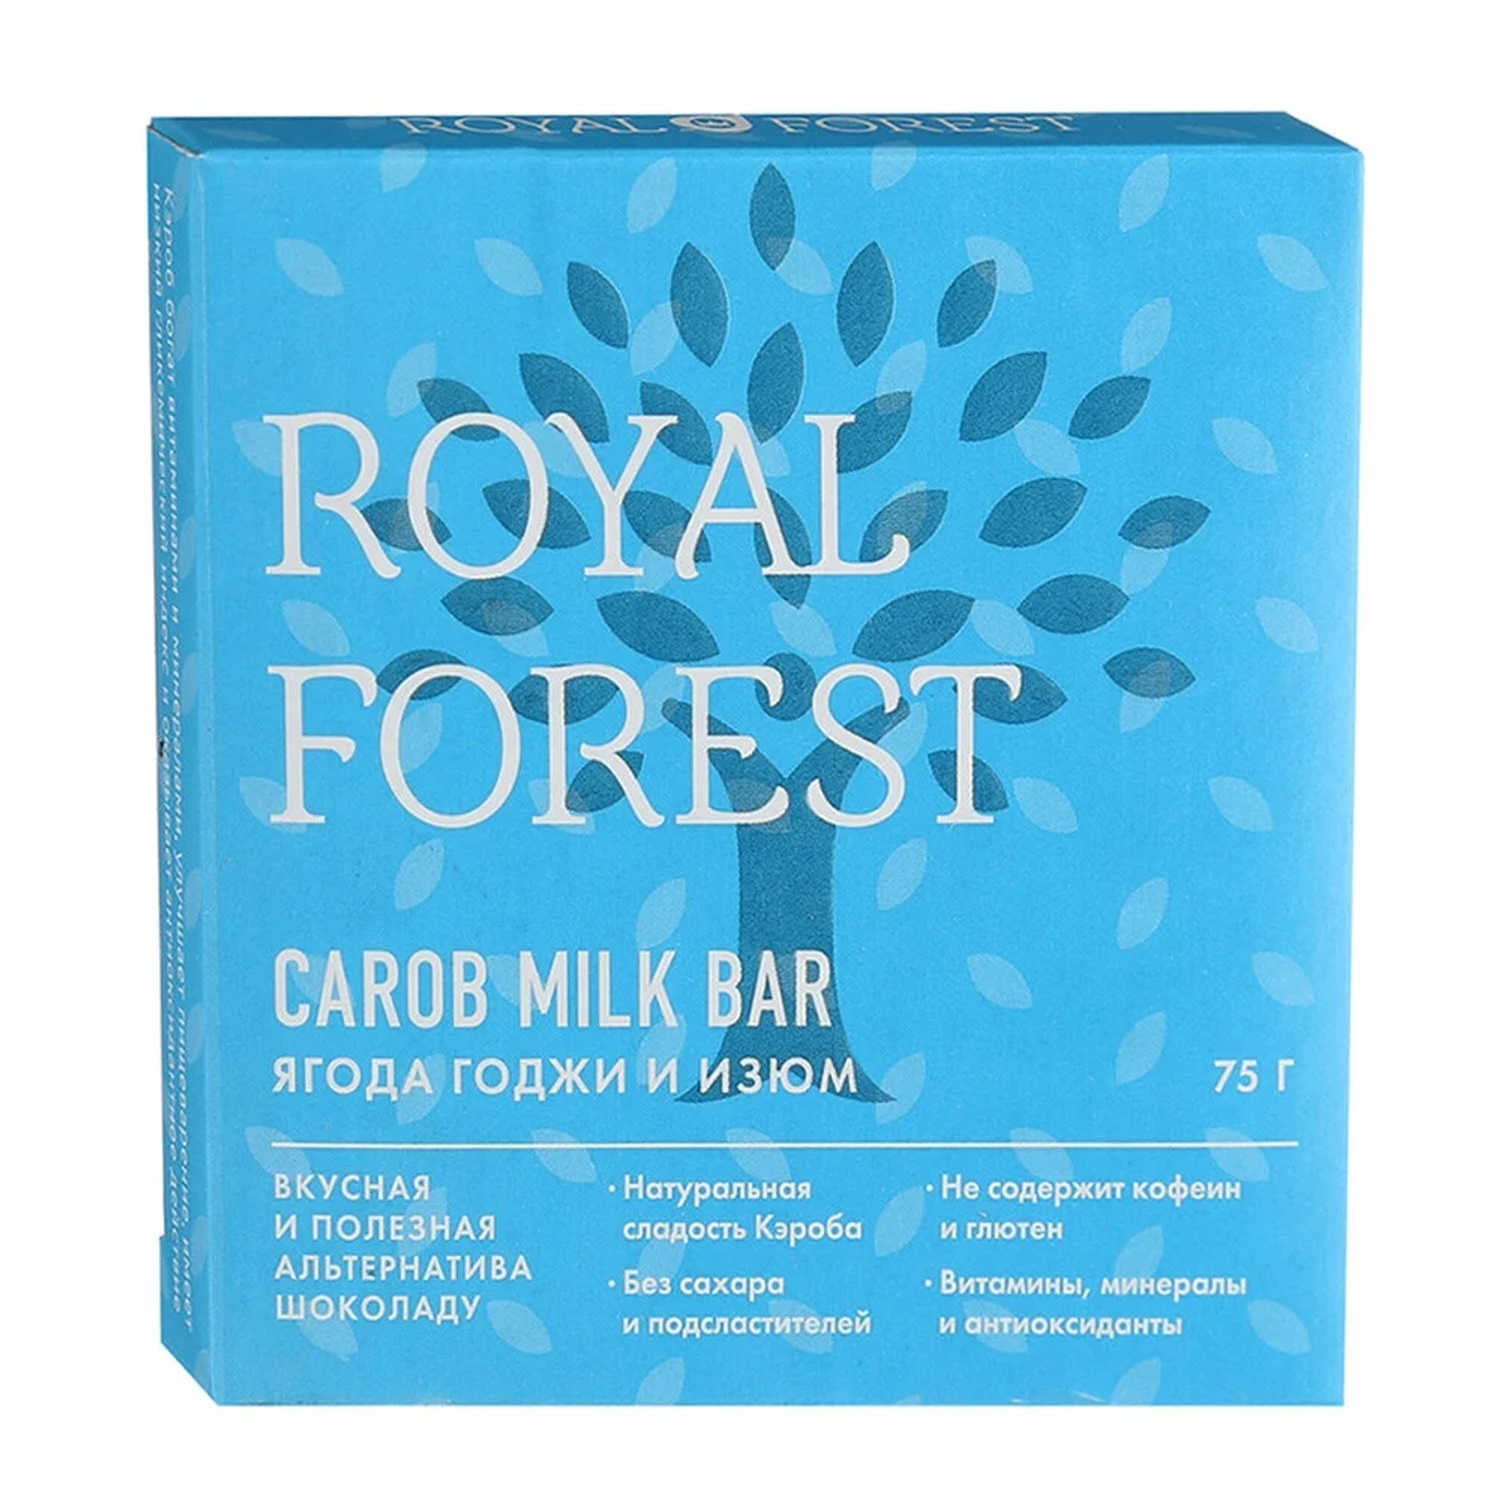 Плиточный шоколад ROYAL FOREST молочный из кэроба с ягодами годжи и изюмом - фото 1